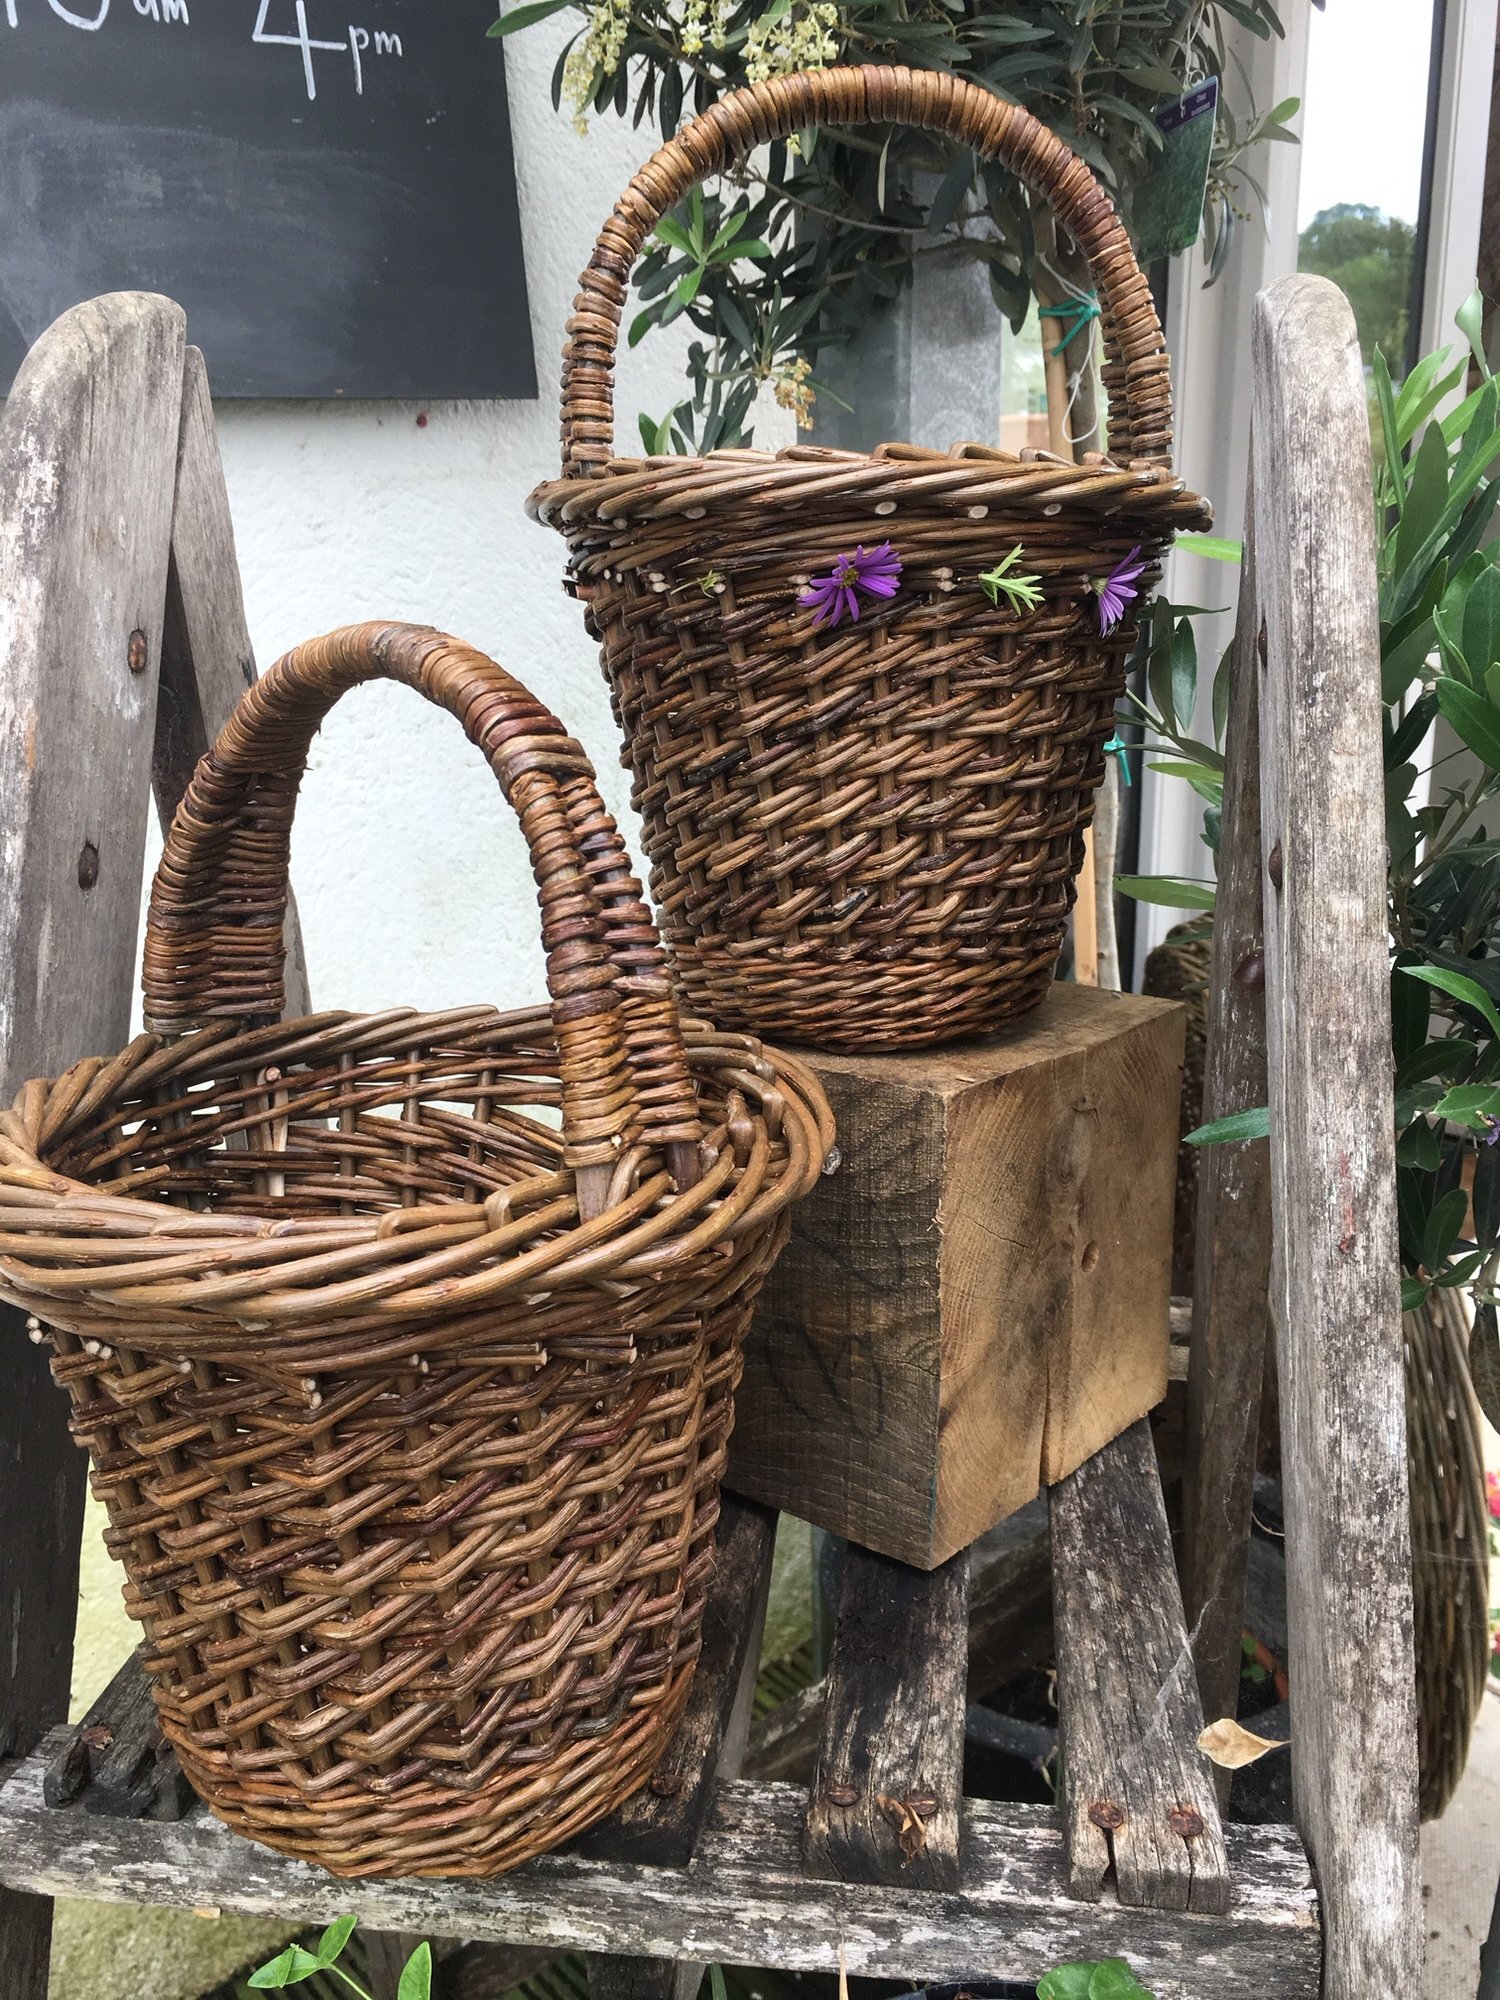 Wedding baskets